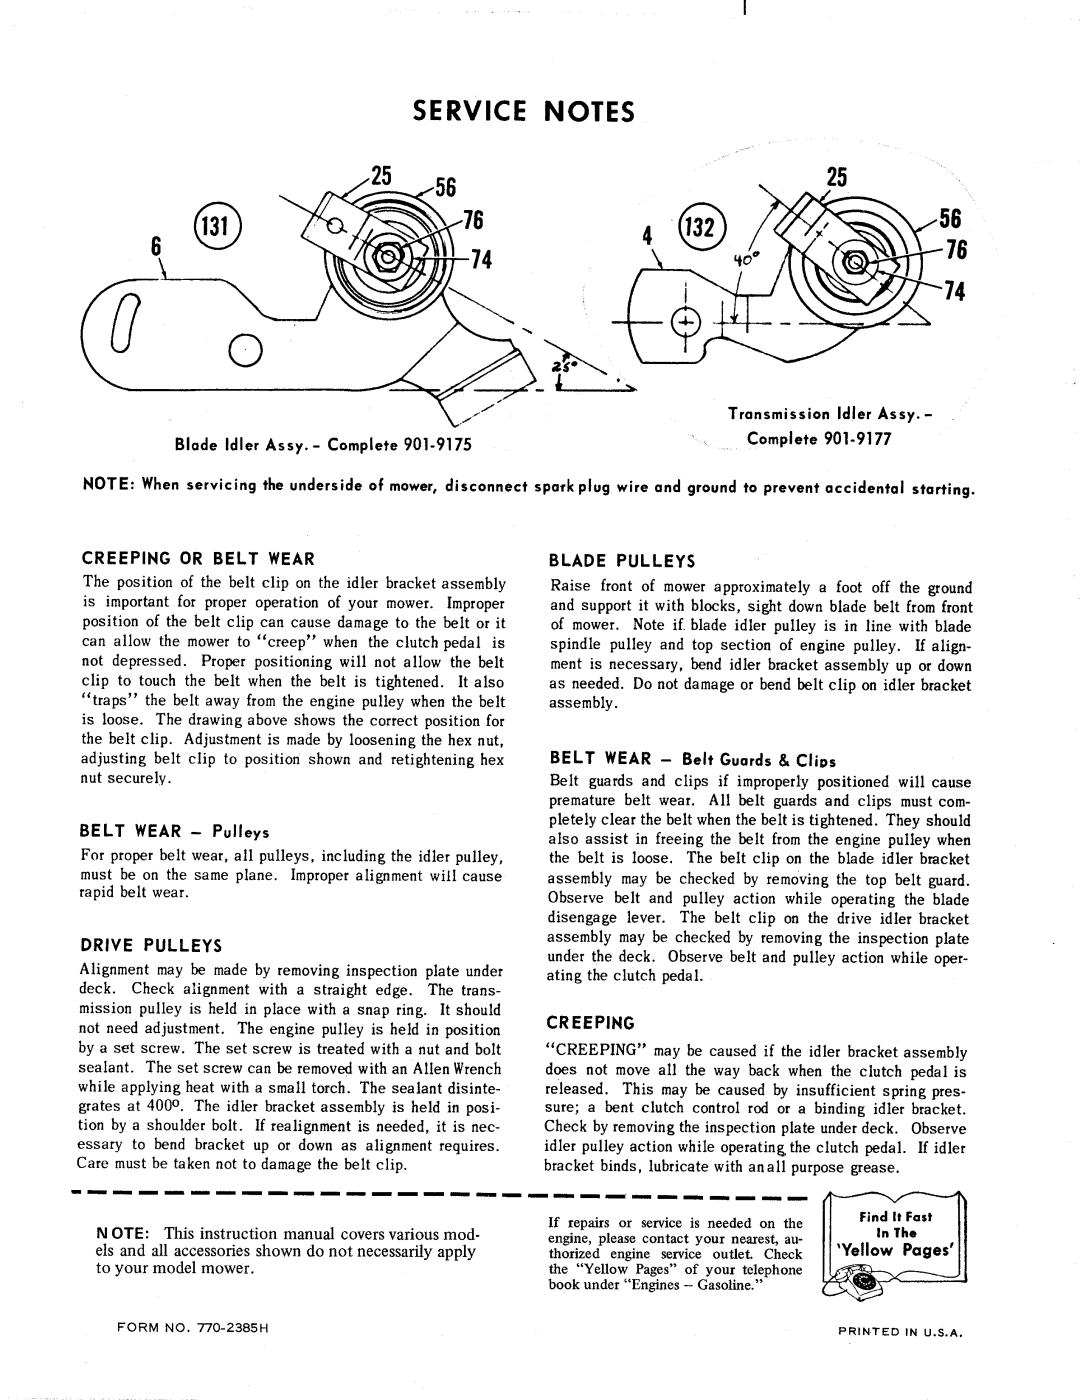 MTD 131-340 manual 